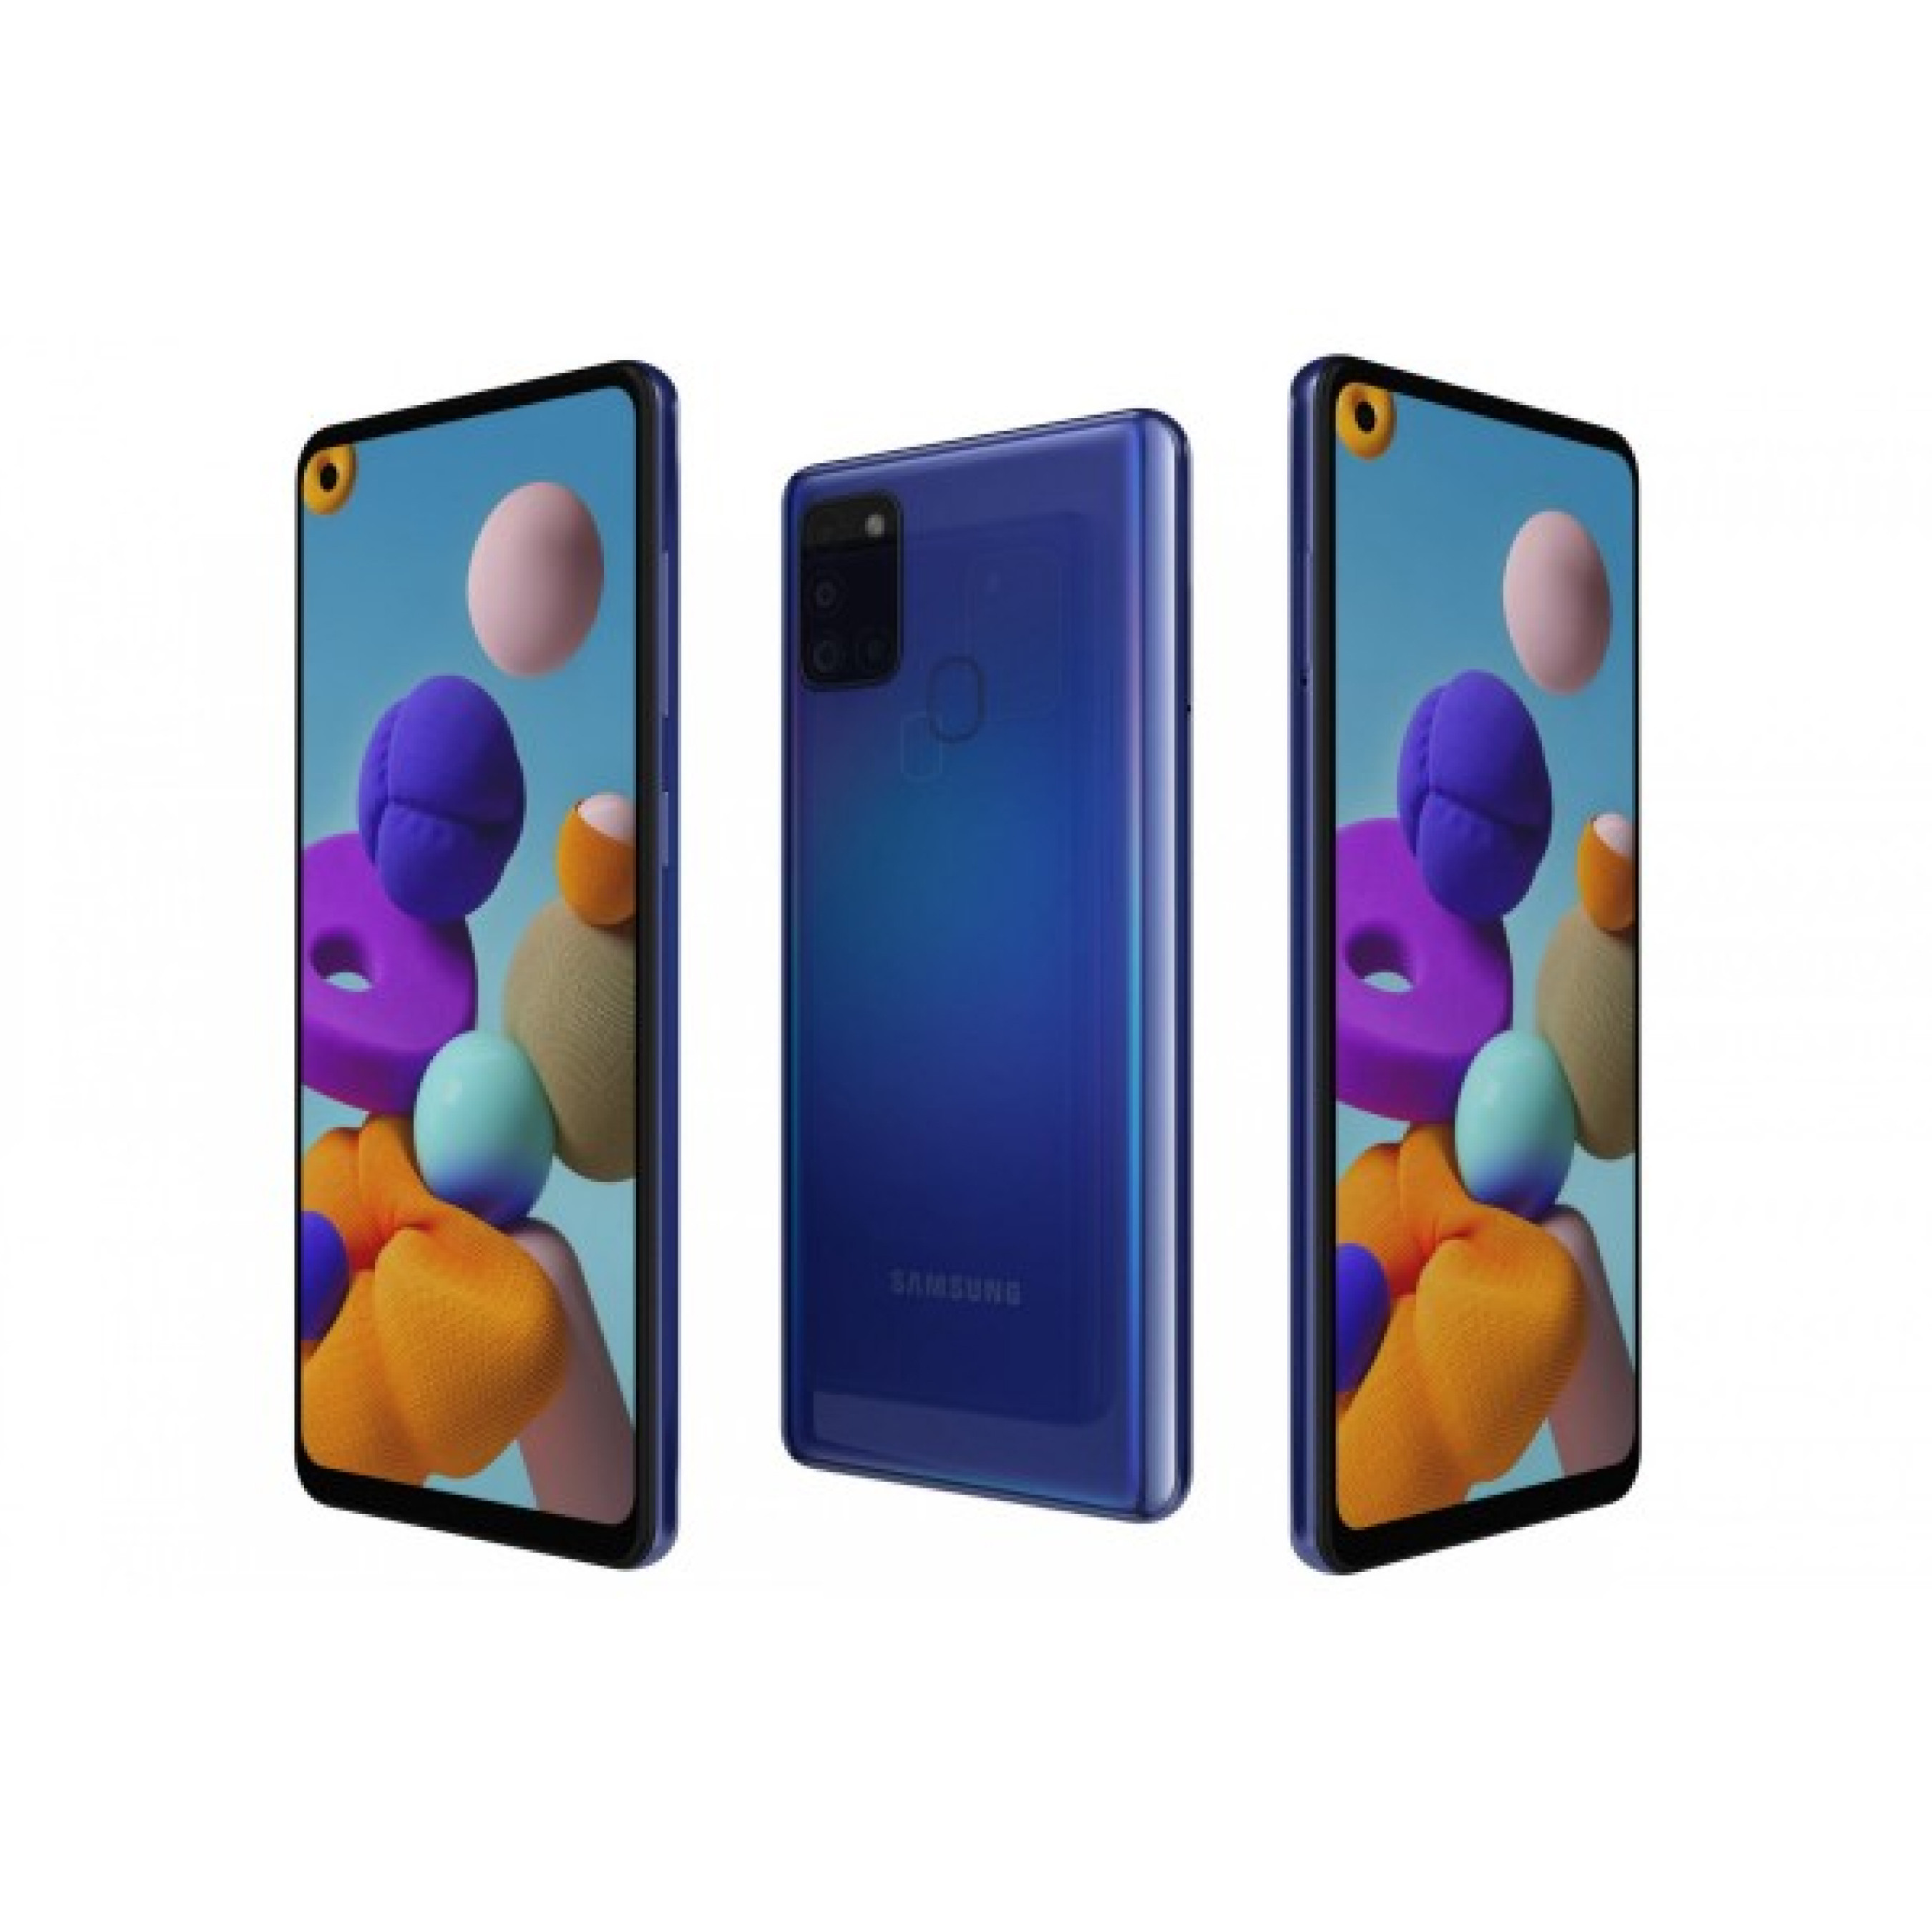 Samsung Galaxy A21s (SM-A217F) 3/32Gb - Blue